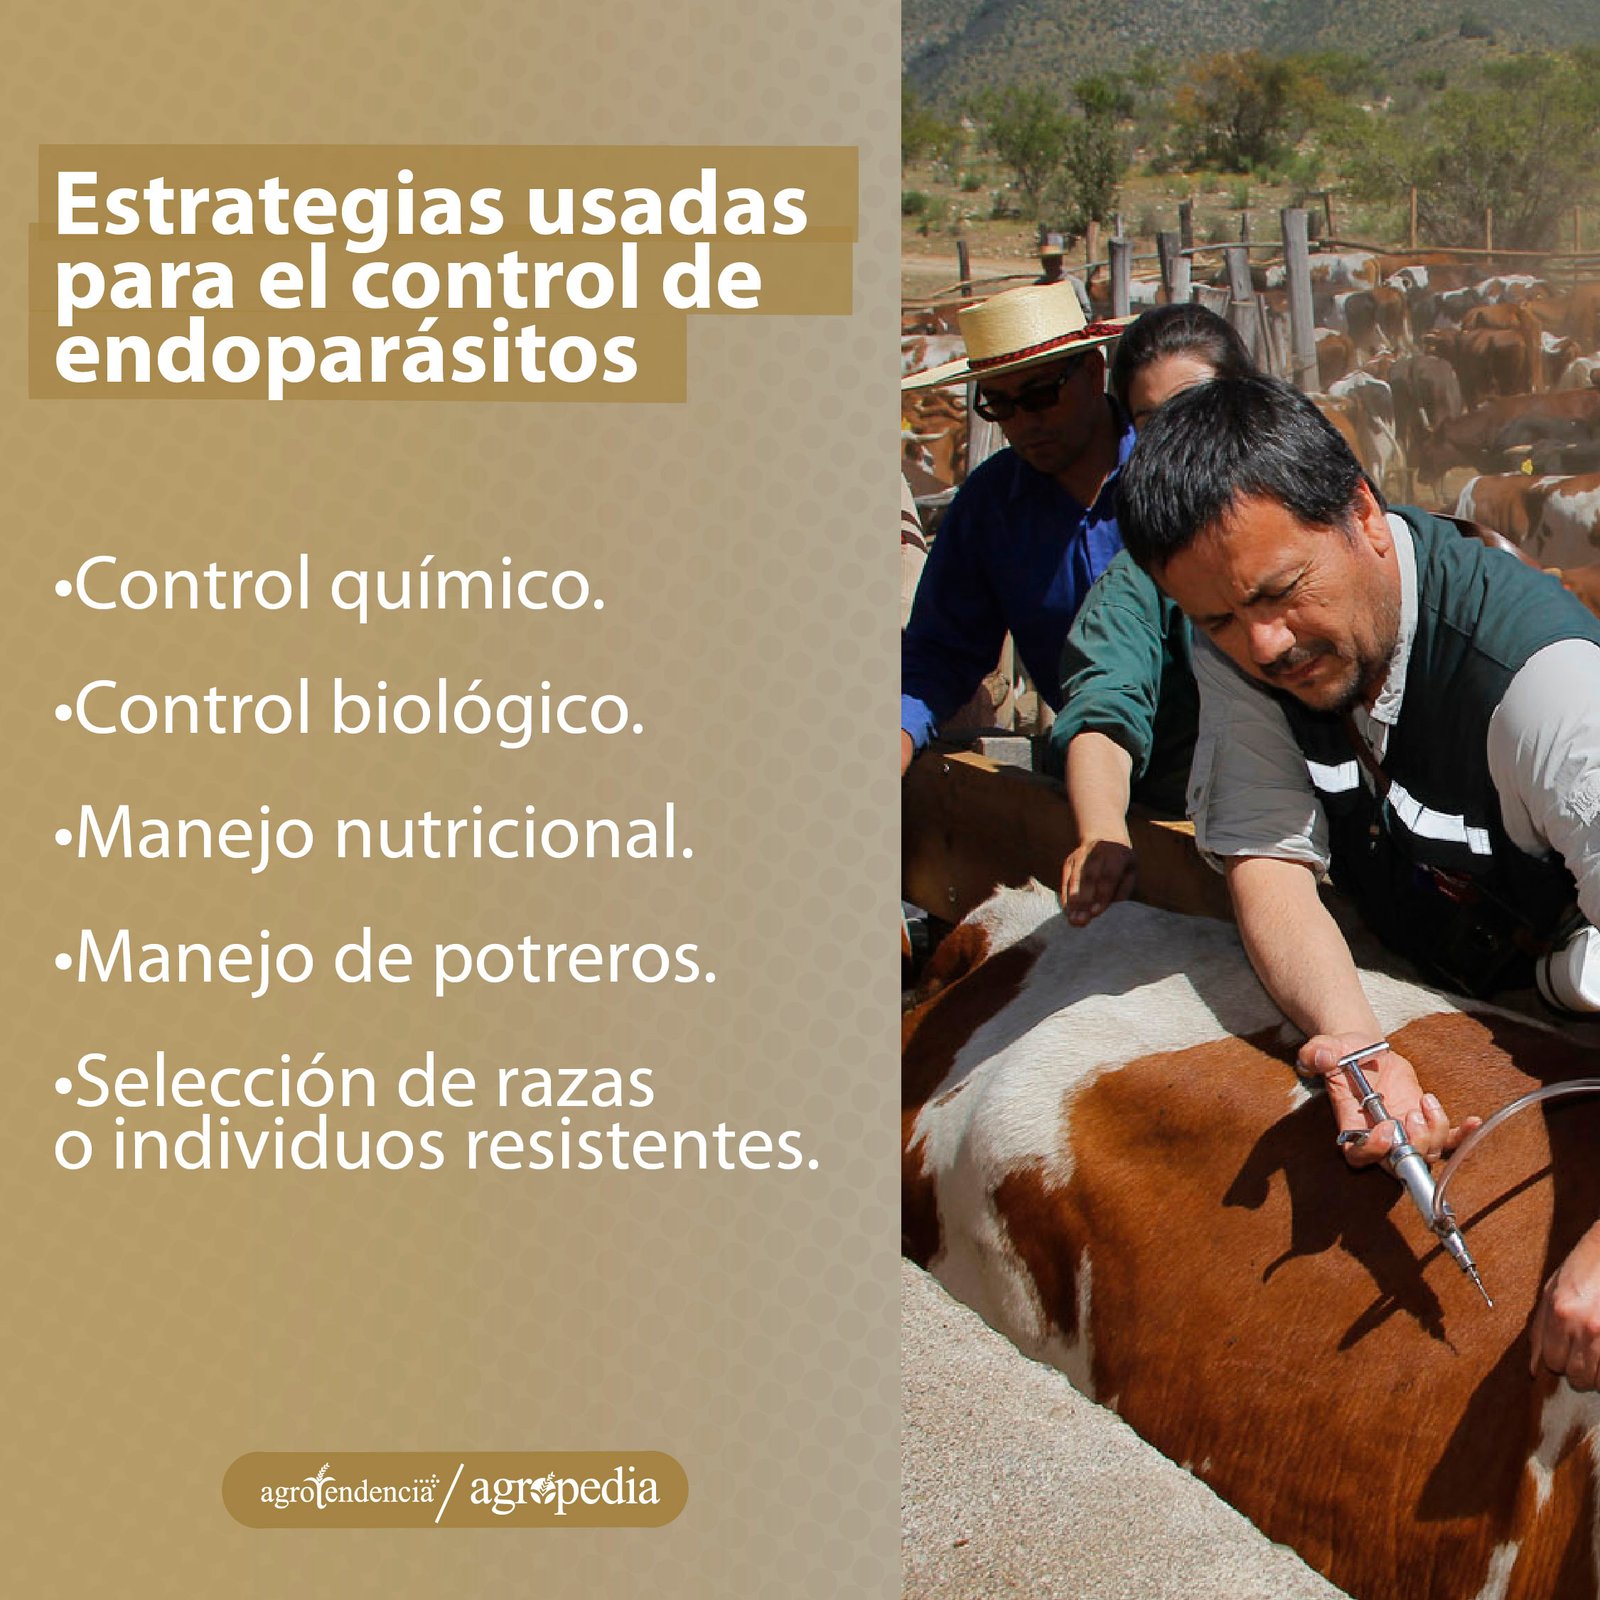 Personas sosteniendo un bovino para aplicarle tratamiento para controlar endoparásitos